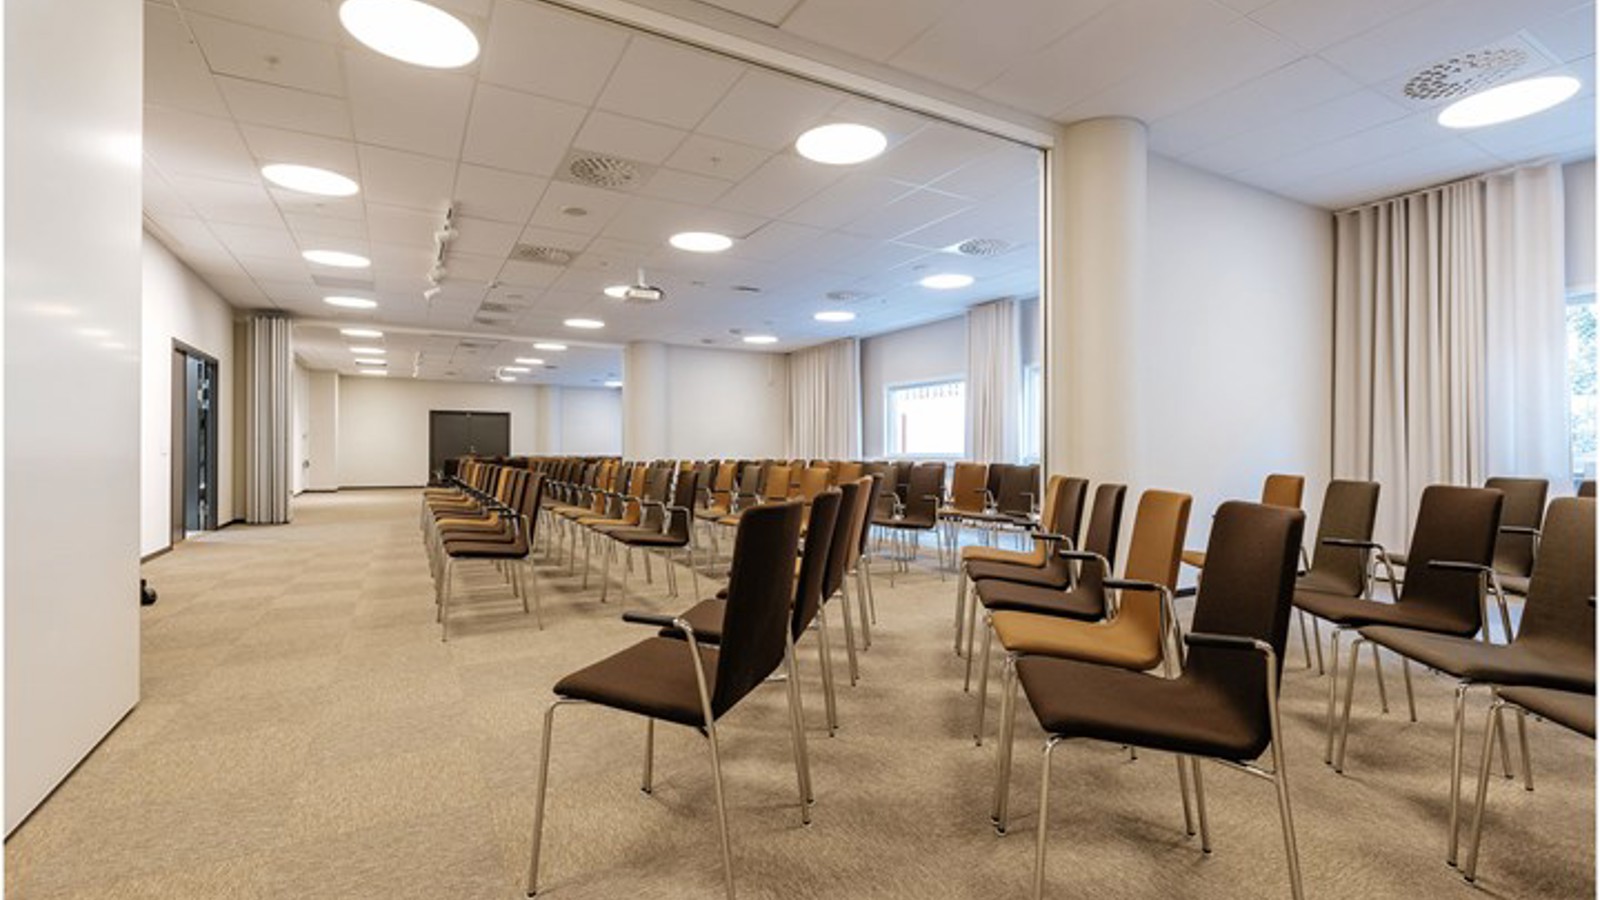 Konferensrum med biosittning, bruna stolar och stora fönster